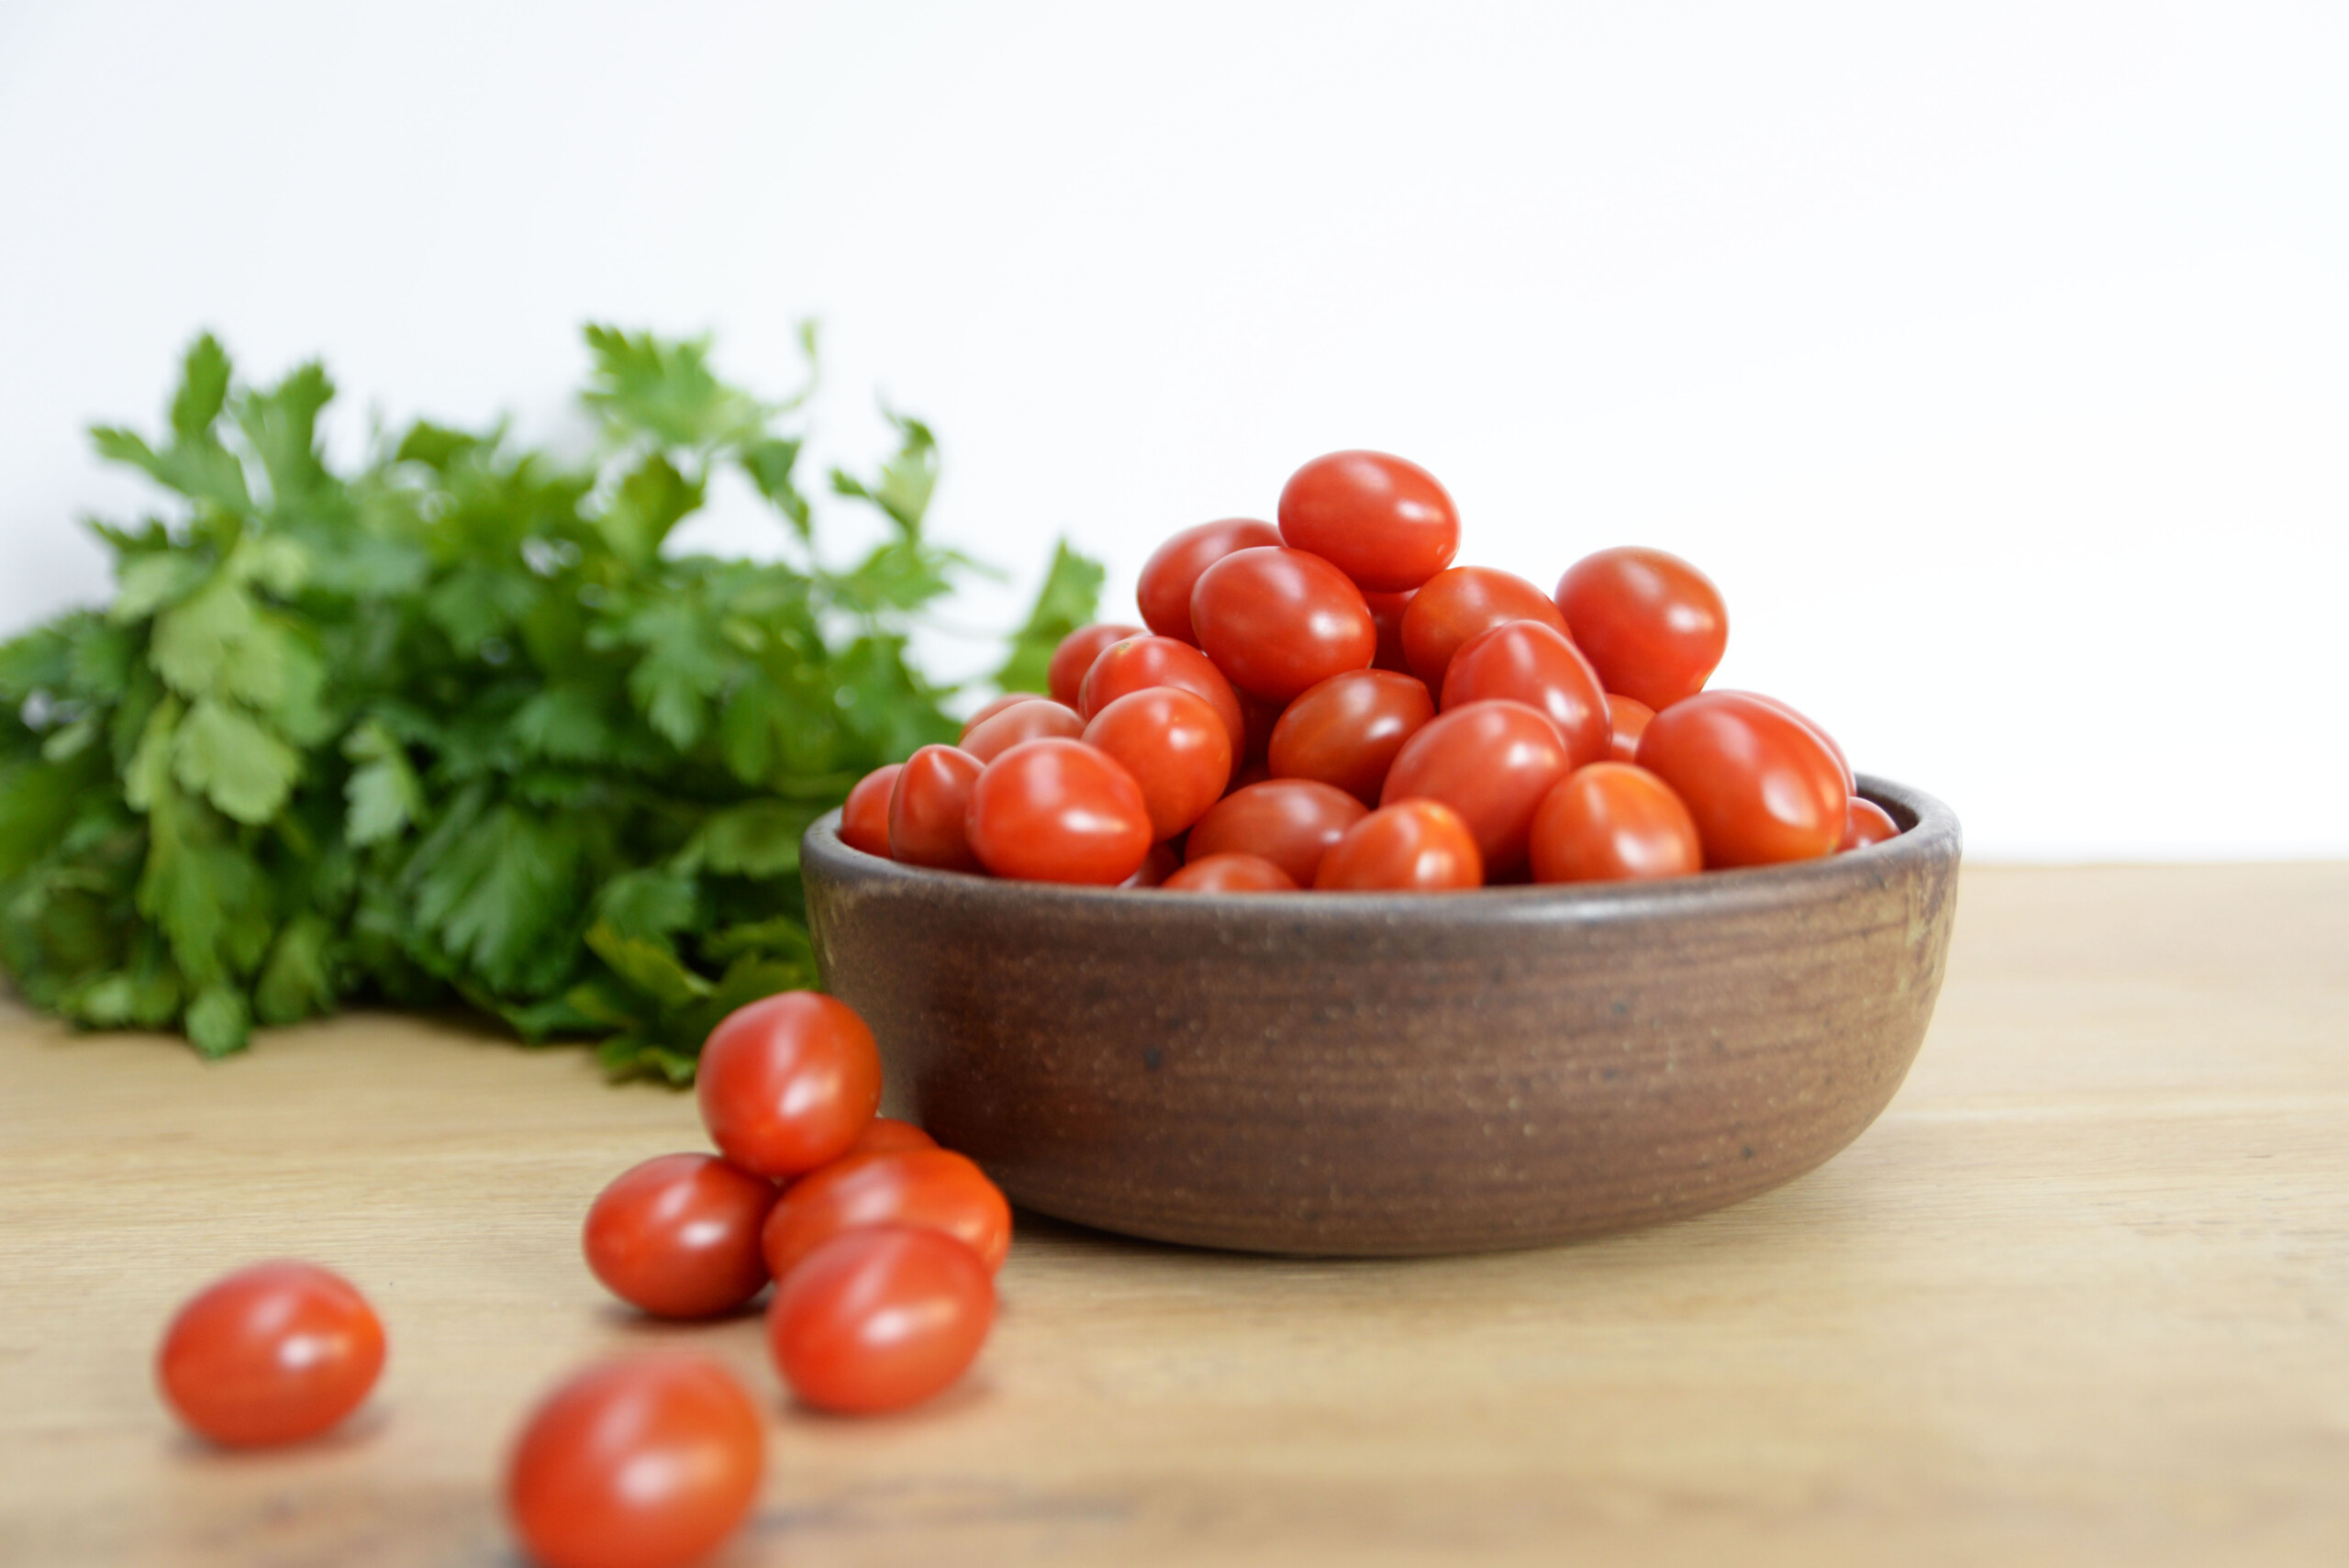 Wir stellen „Tomatoes that Work for You“ vor: erausforderungen in Vorteile verwandeln